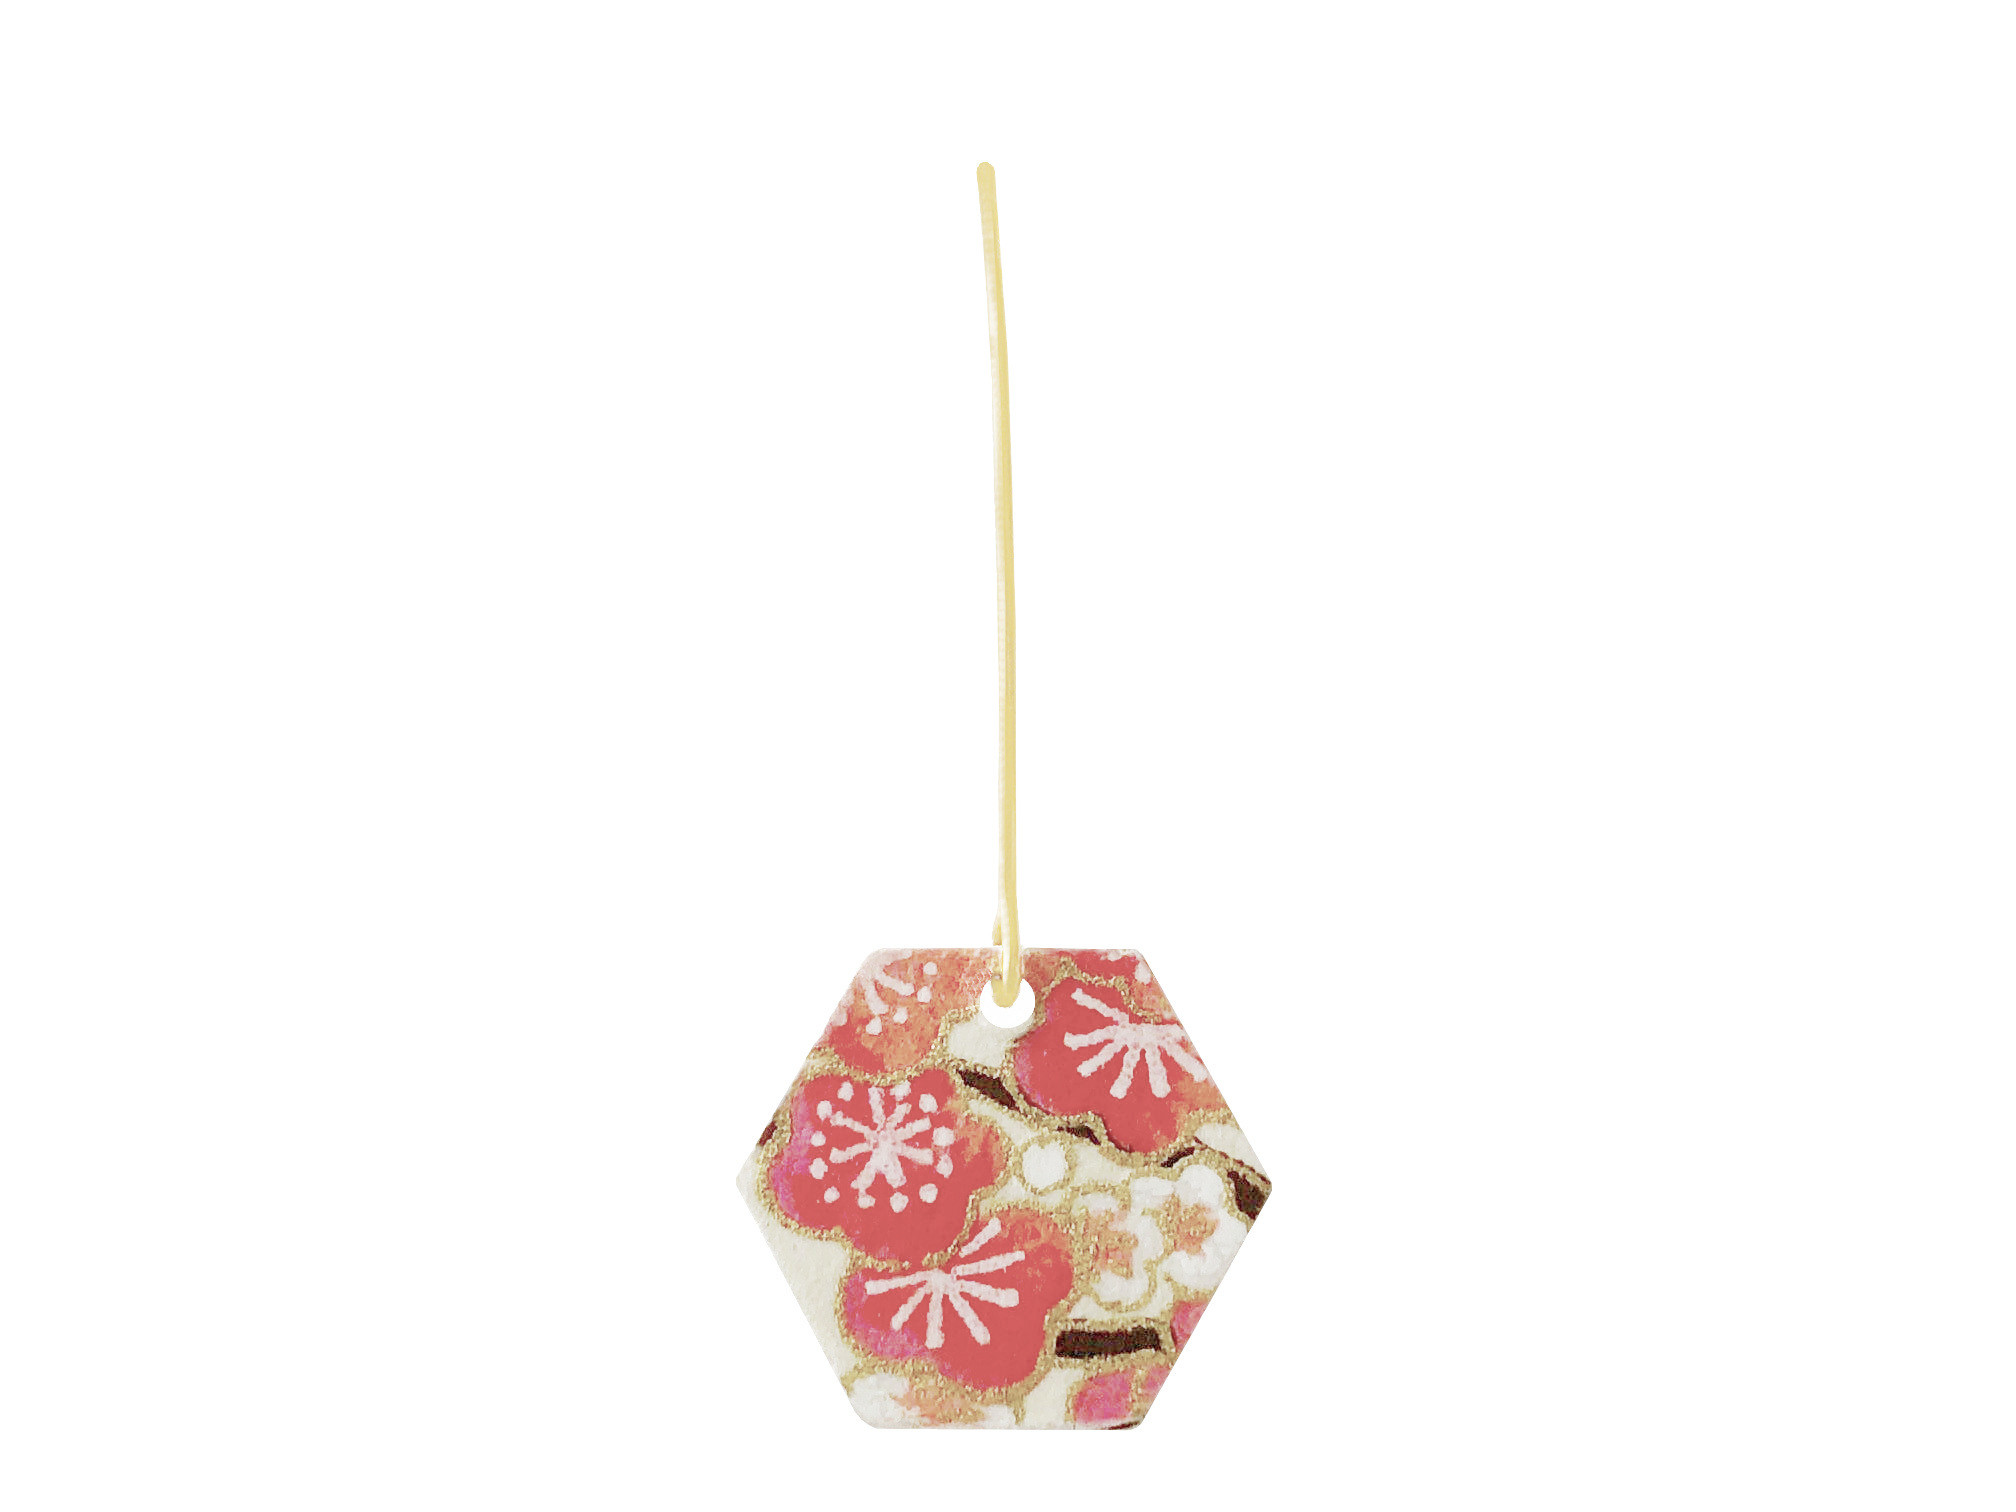 Boucles doreilles FUMI acier inoxydable doré or longues papier japonais washi fleurs couleur rose beige